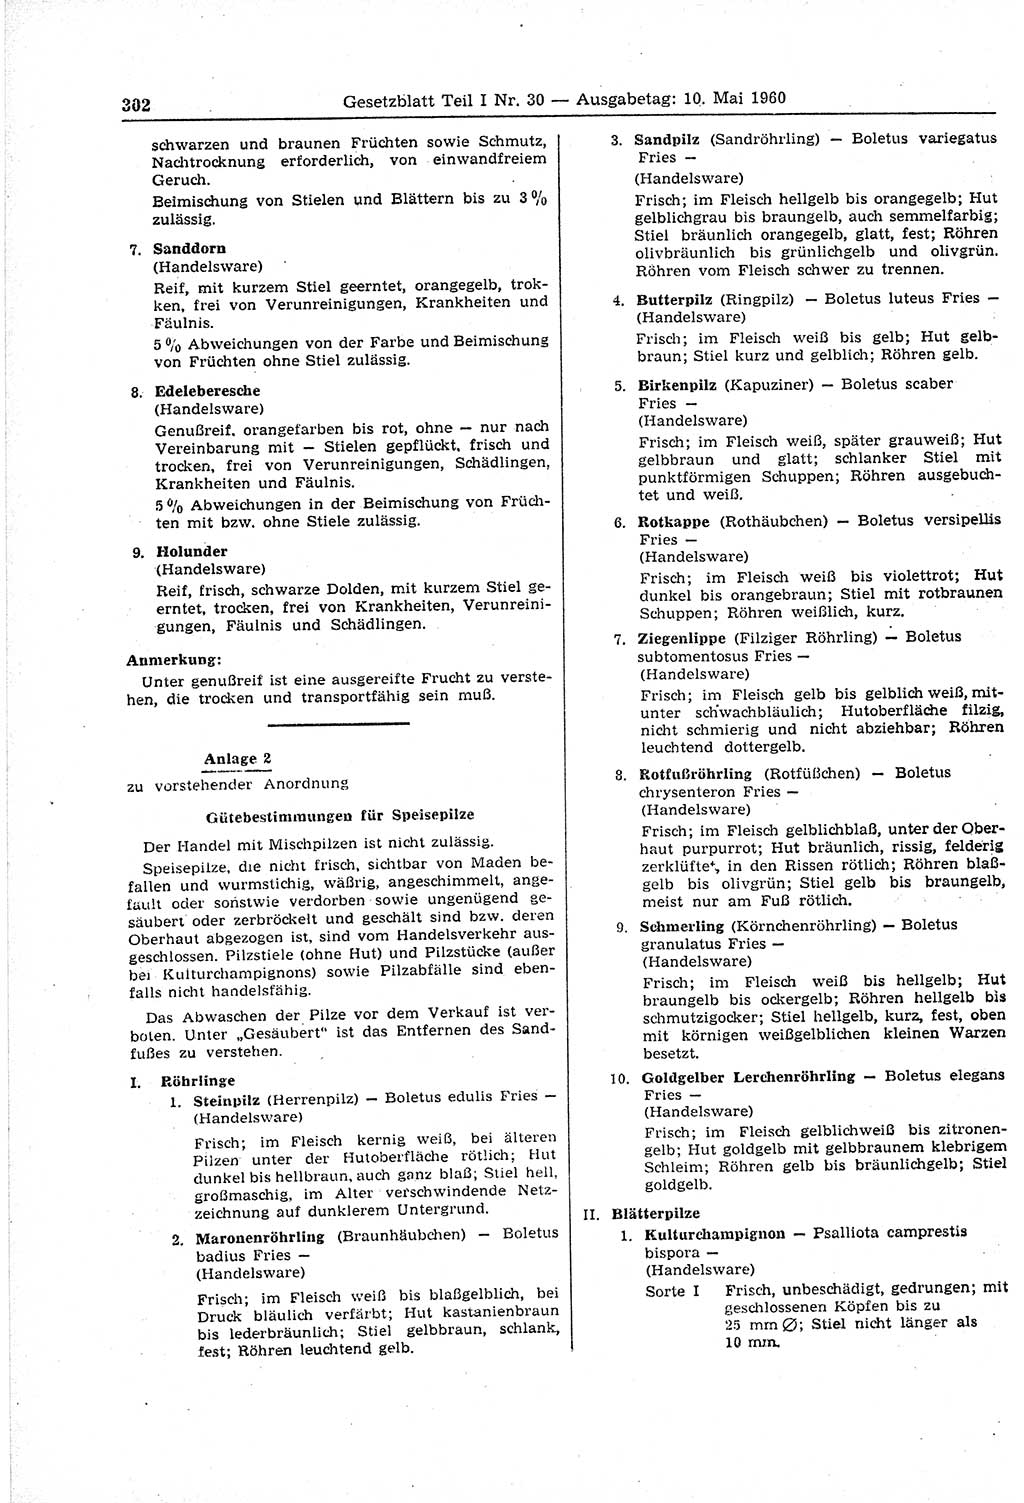 Gesetzblatt (GBl.) der Deutschen Demokratischen Republik (DDR) Teil Ⅰ 1960, Seite 302 (GBl. DDR Ⅰ 1960, S. 302)